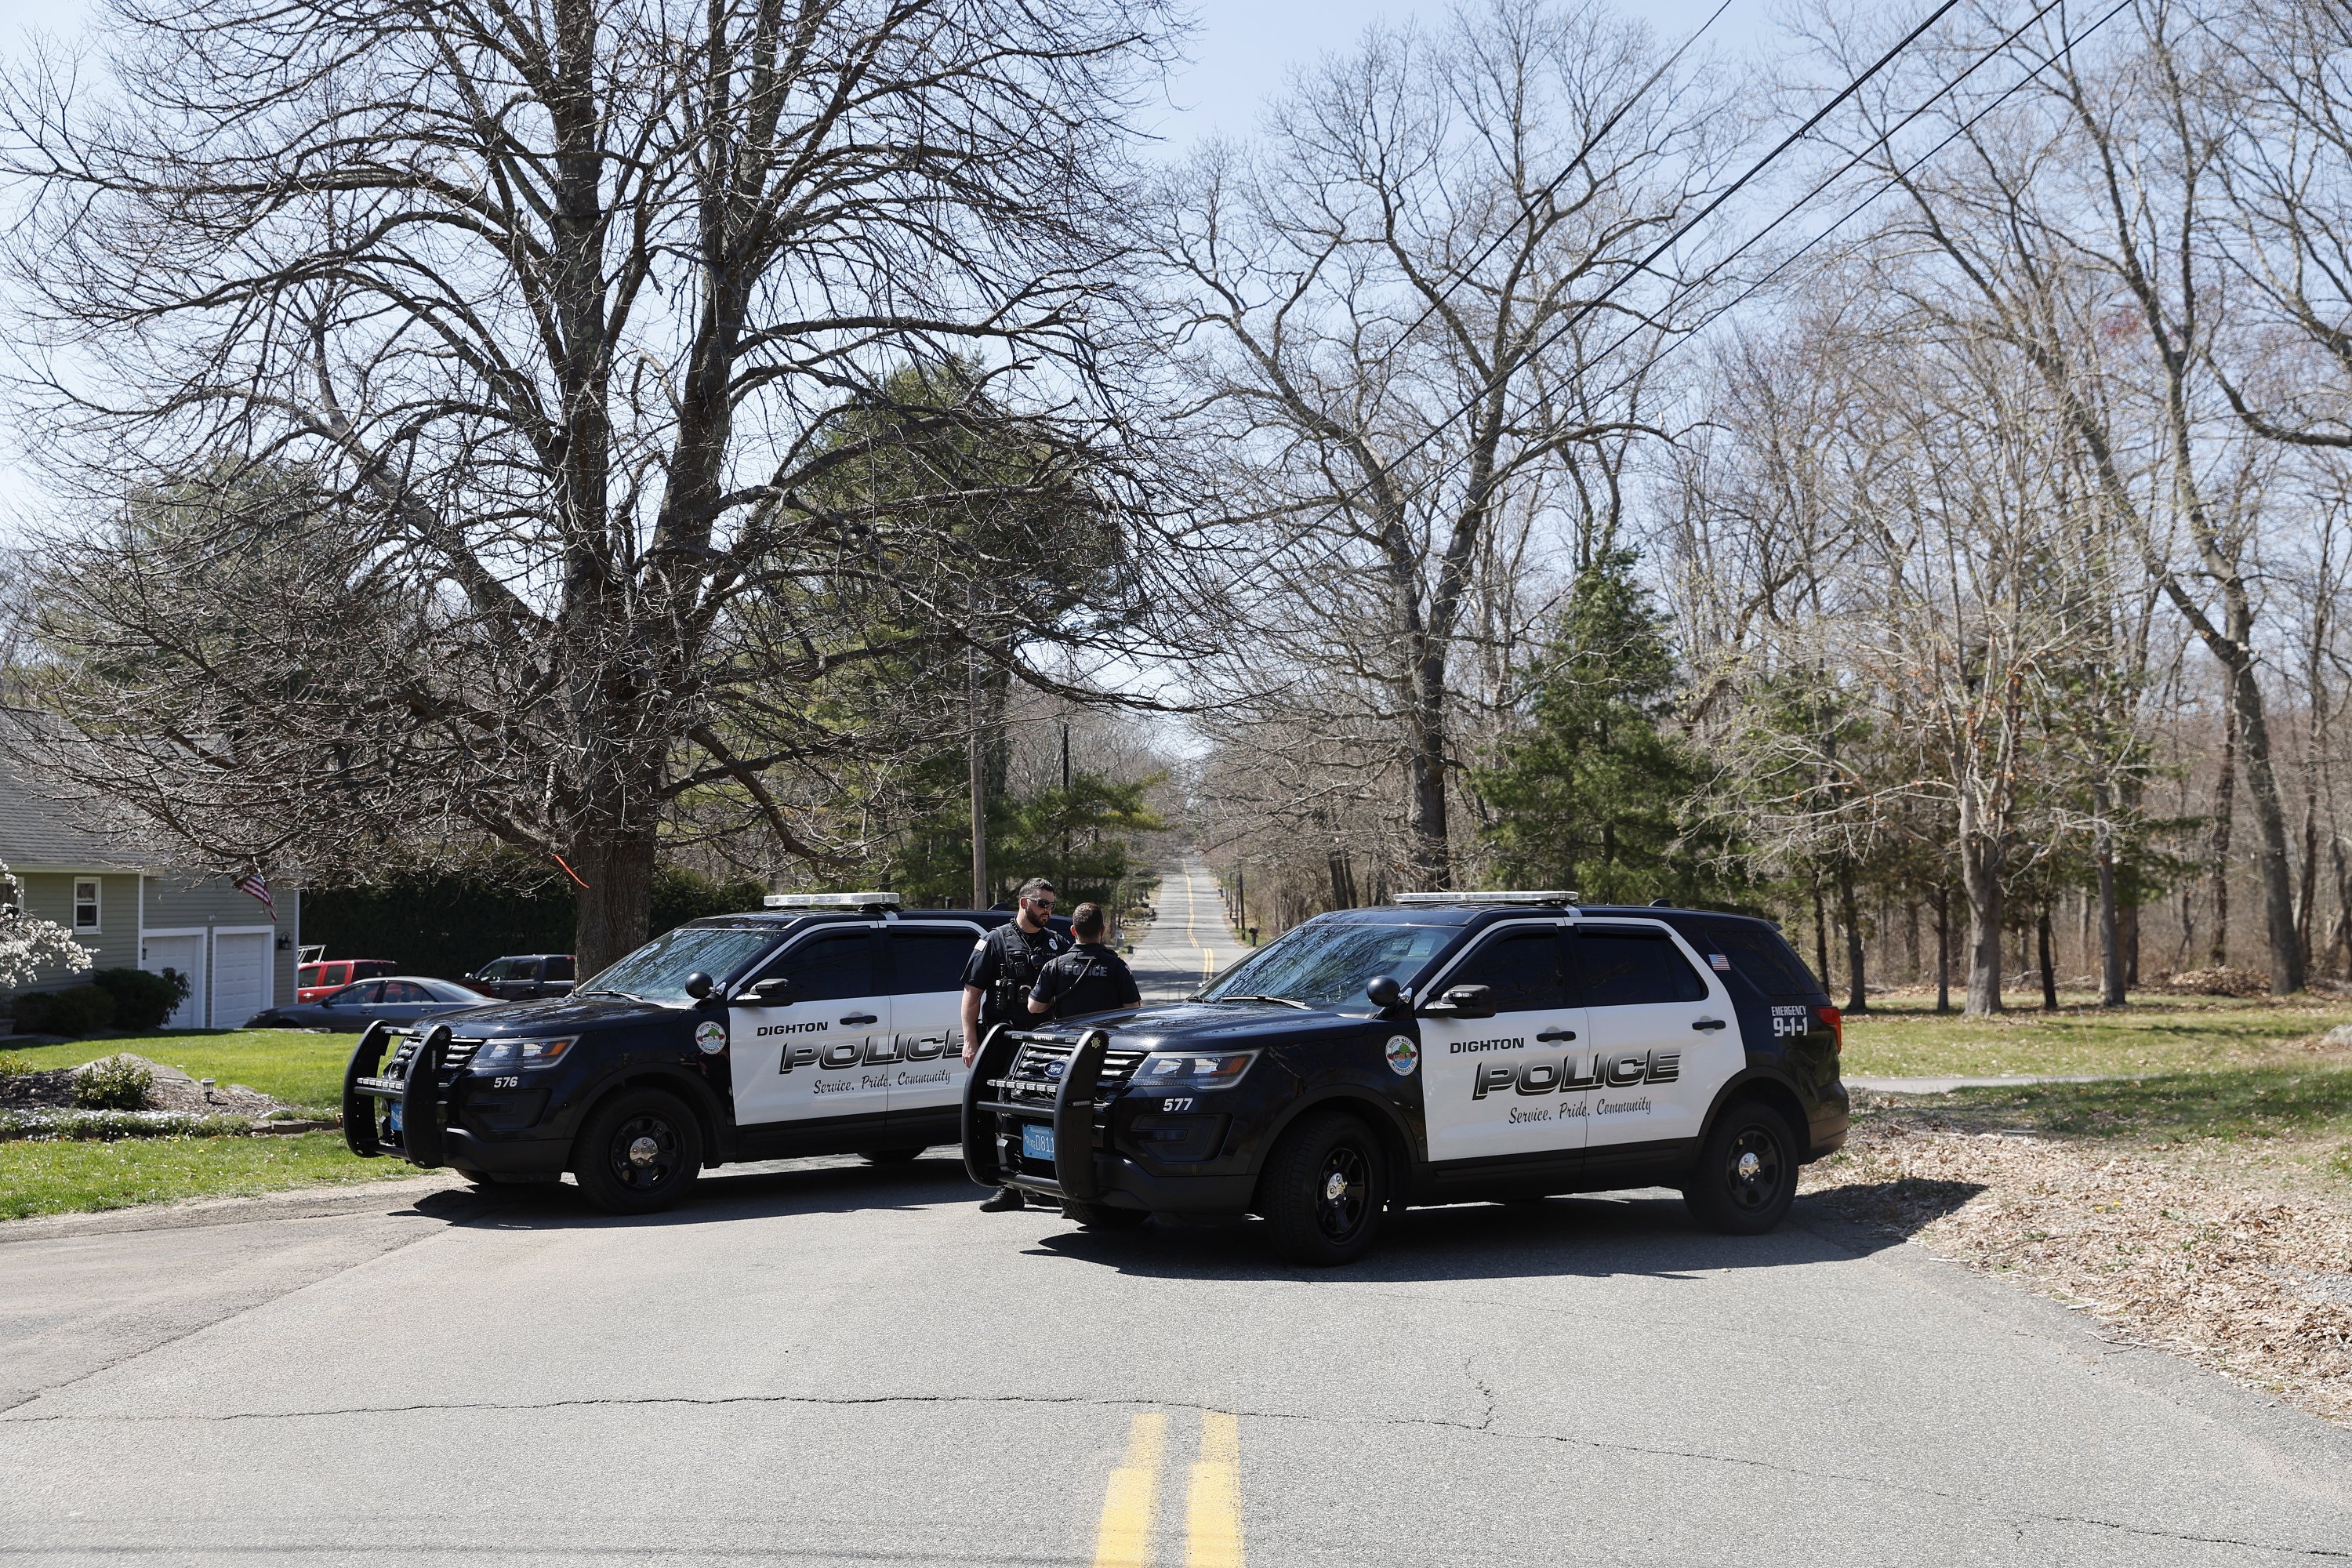 Anggota Departemen Kepolisian Dighton memblokir jalan tempat tinggal terduga tersangka pembocoran intelijen AS di Dighton, Massachusetts, AS, 13 April 2023. (Foto EPA)